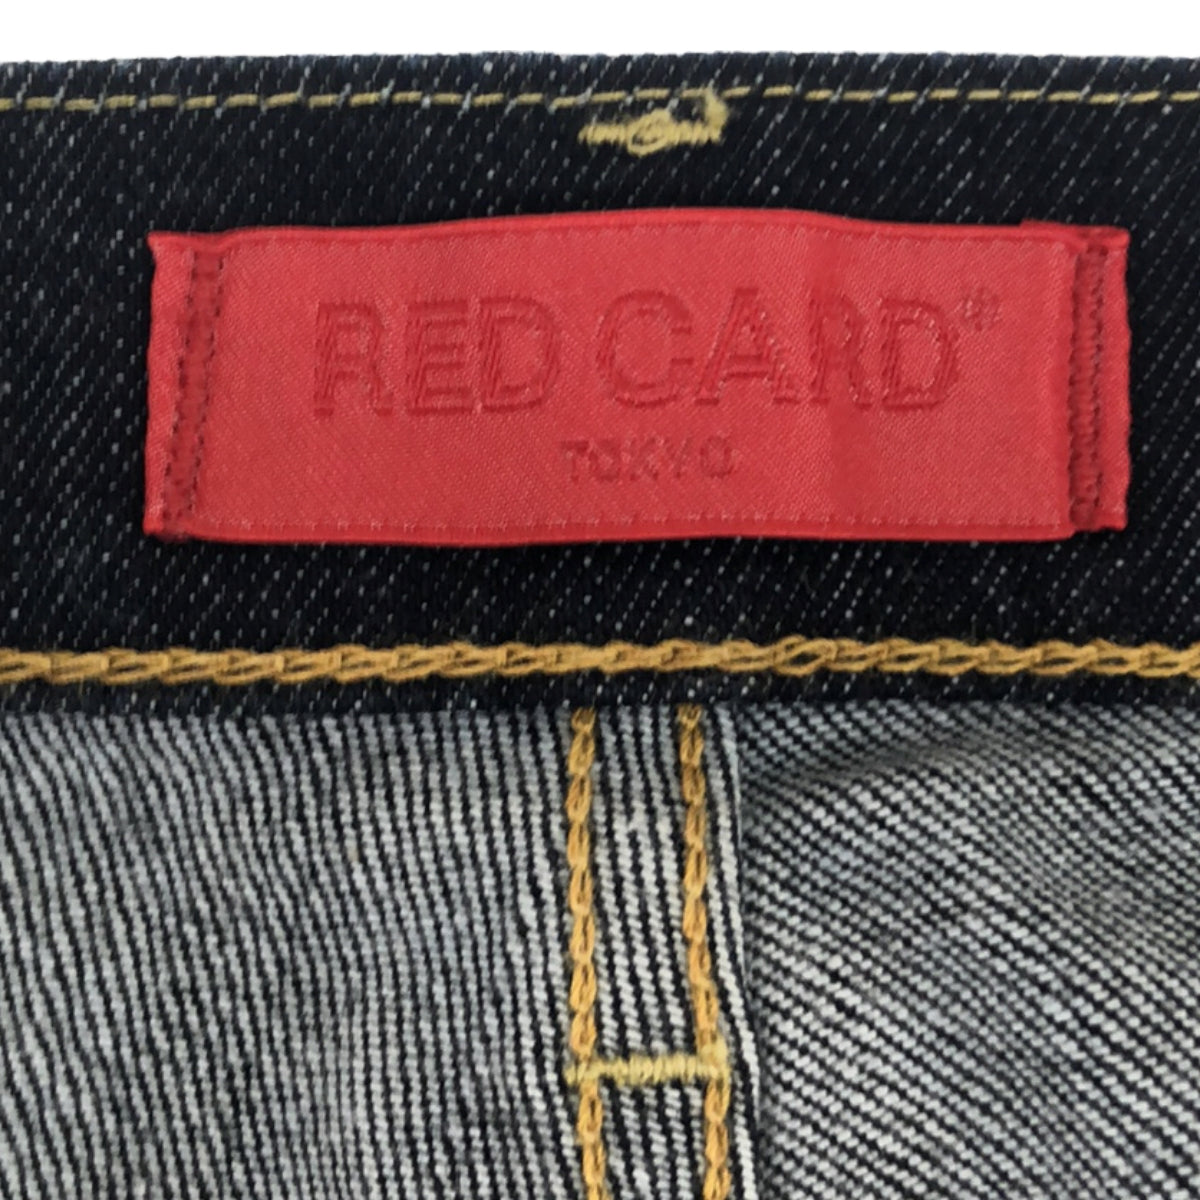 RED CARD / レッドカード | Happiness / テーパード ストレッチ デニムパンツ | 25 | レディース